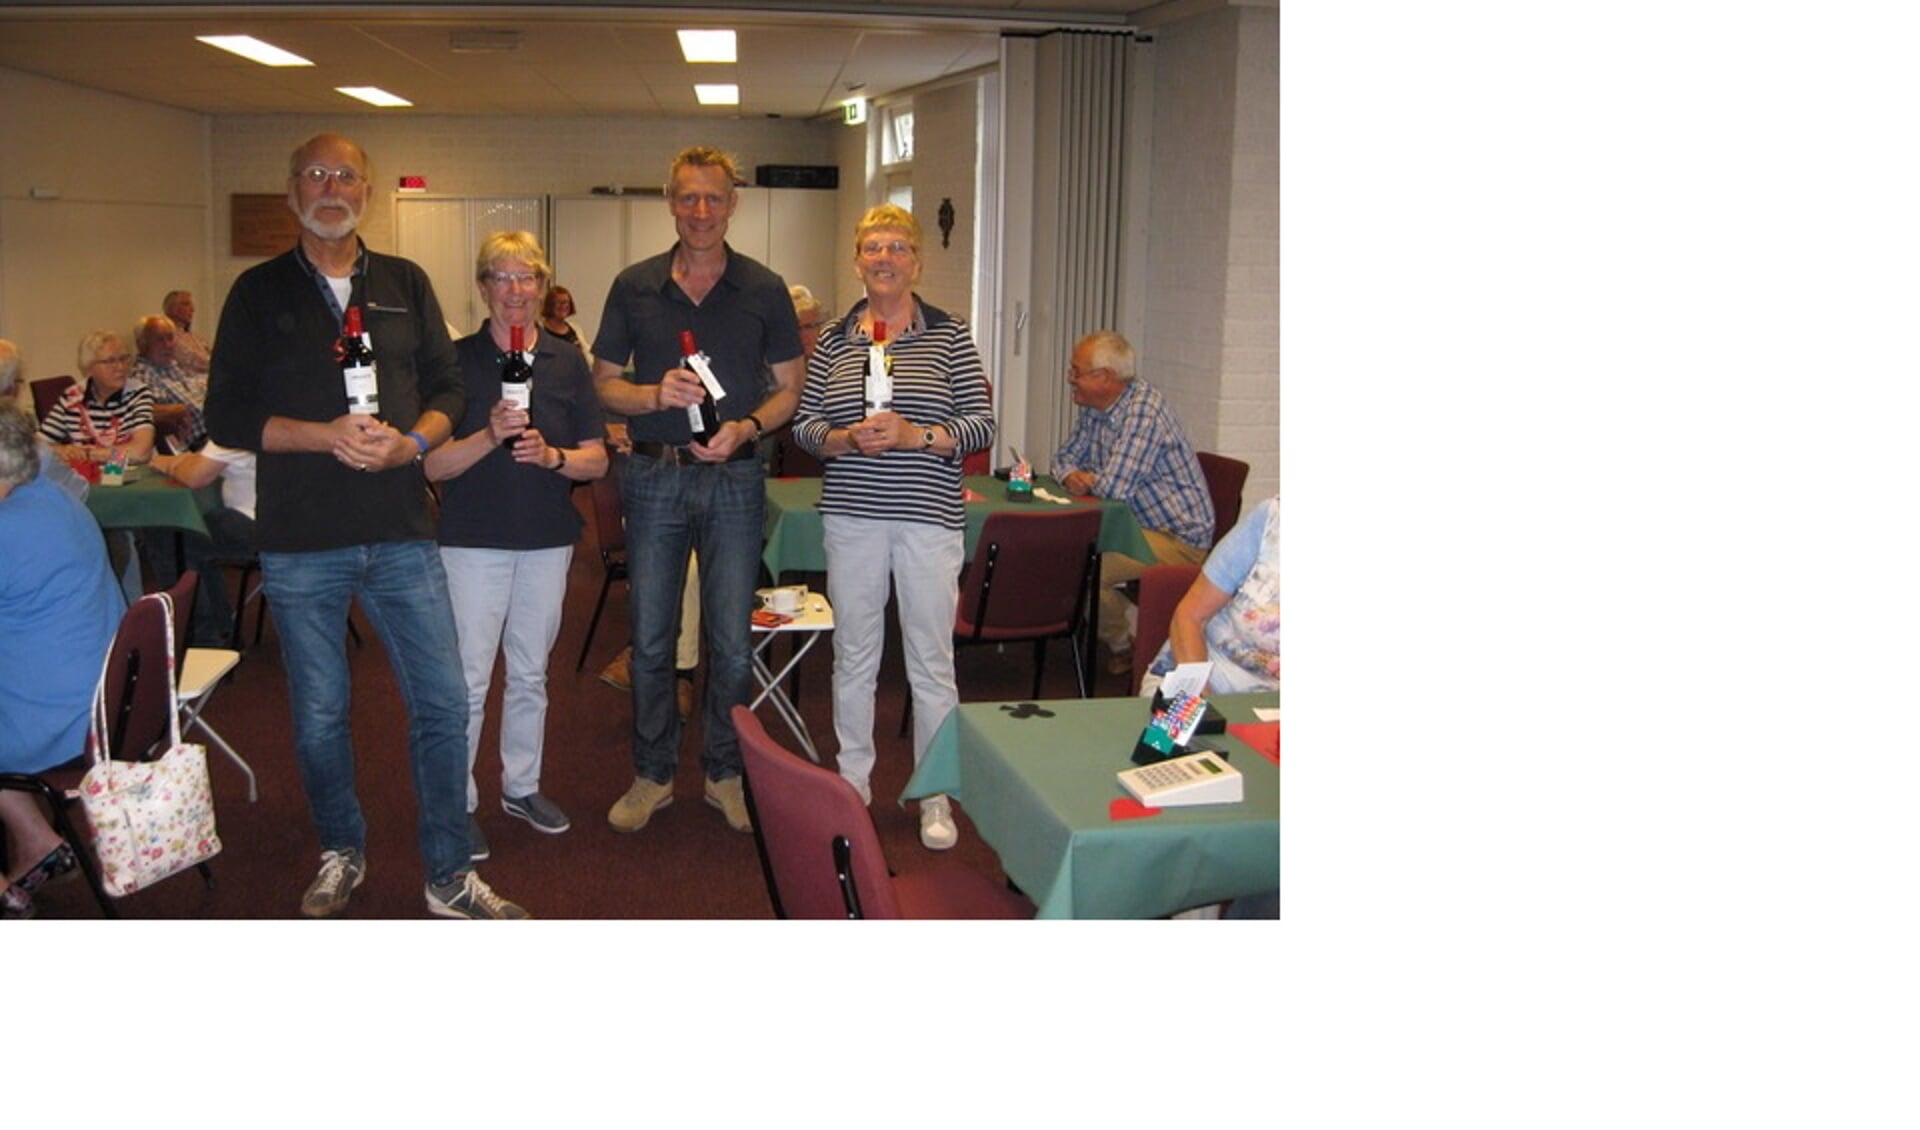 Seizoenswinnaars van bridgeseizoen 2016/17. Van links naar rechts: eerste plaats: Peter Hoorma en Arina van Westerhuis. Tweede plaats Dinand Kurz en Janneke Monteban. Foto: PR